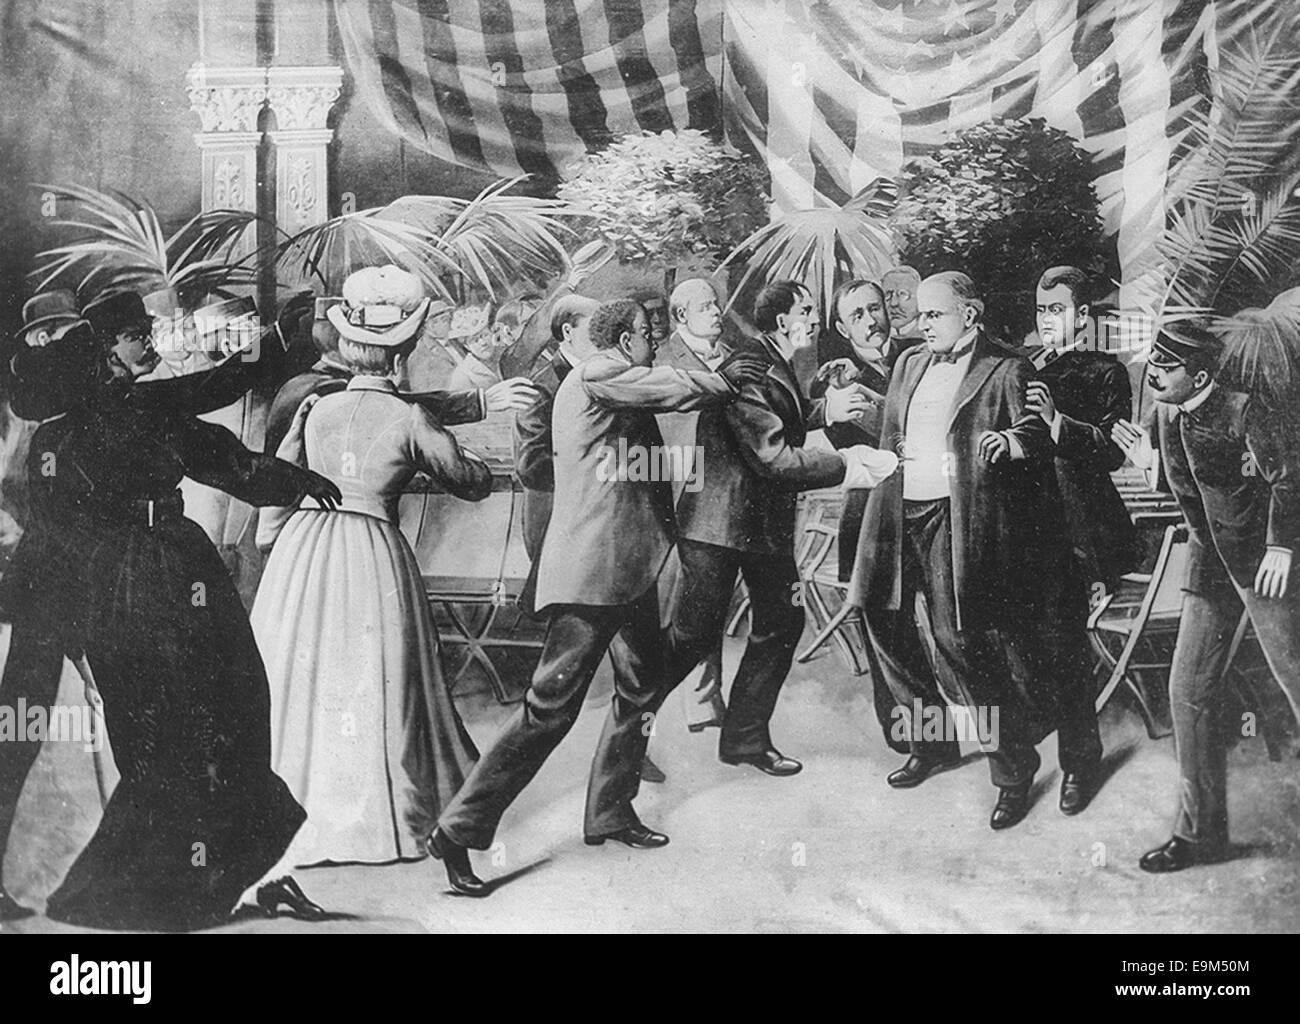 Attentat auf Präsident McKinley - Leon Czolgosz erschießt Präsident McKinley mit einem verdeckten Revolver an der Pan-American Exposition Rezeption, 6. September 1901 Stockfoto